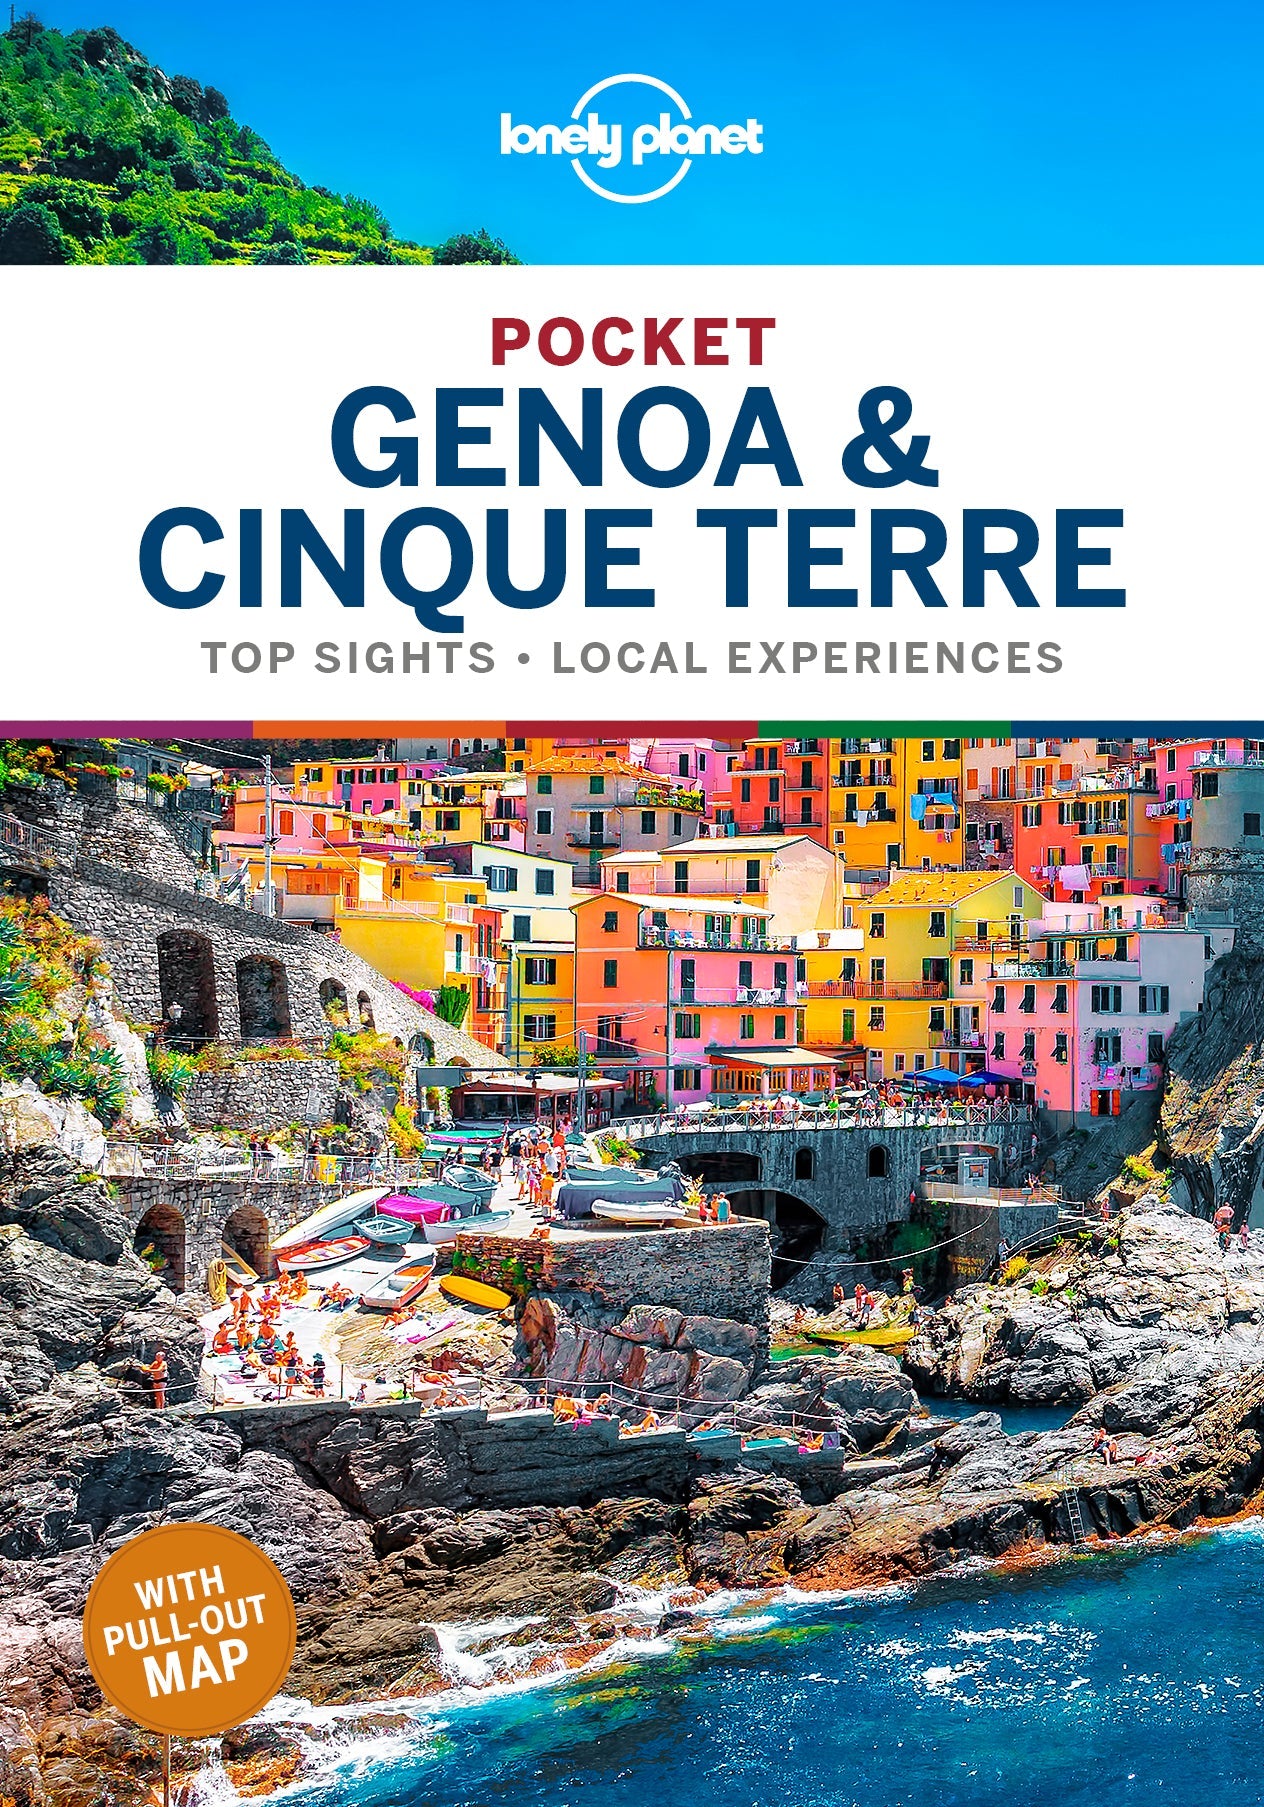 Pocket Genoa & Cinque Terre preview